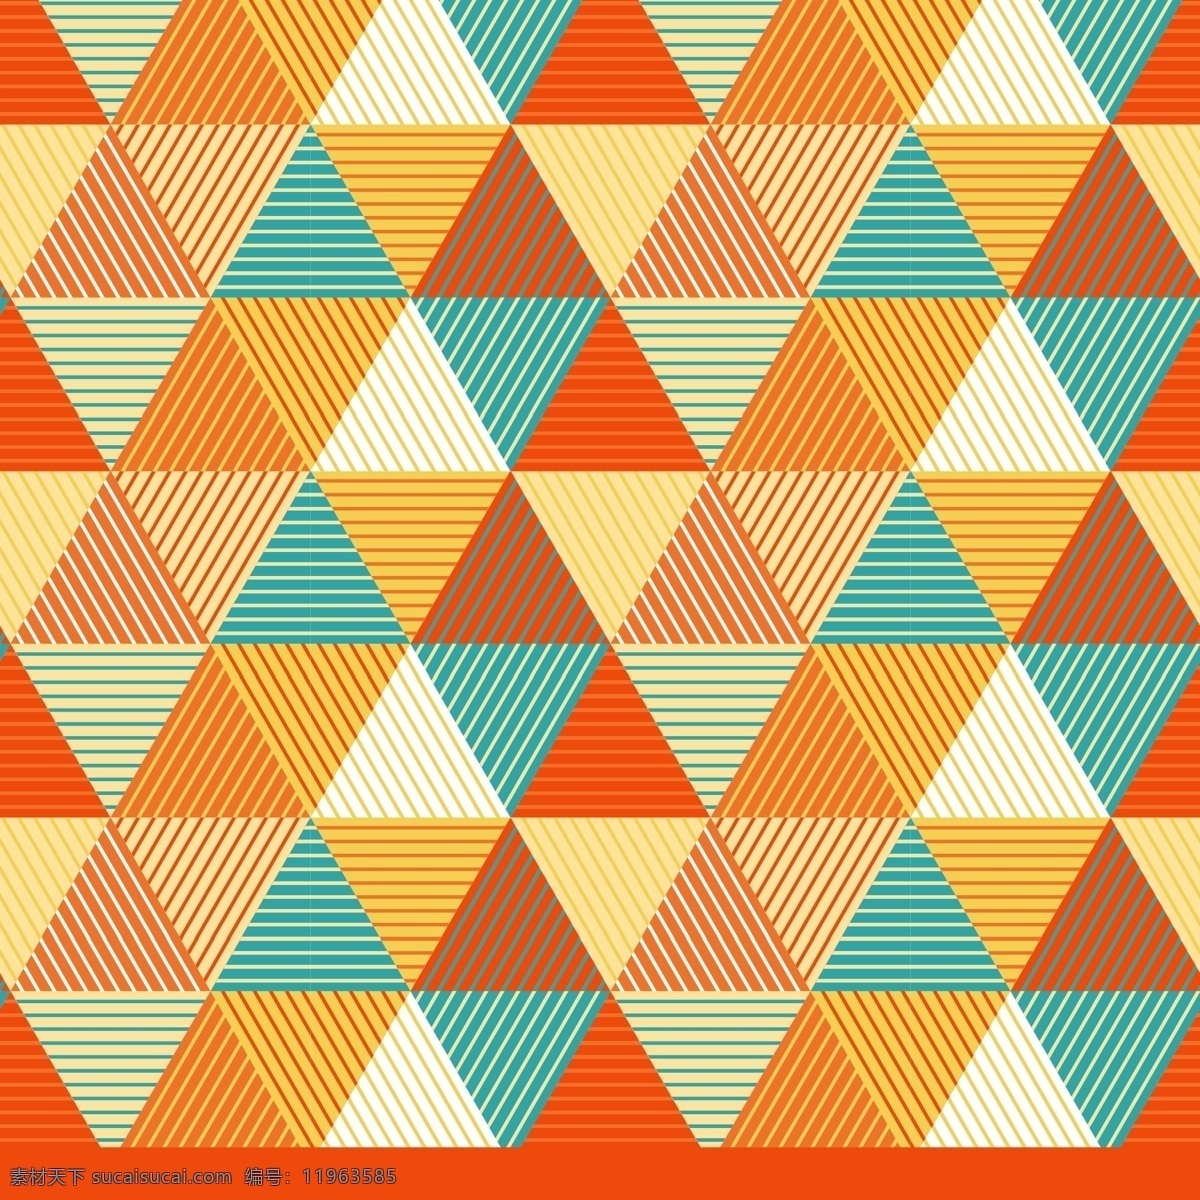 彩色 三角 无缝 背景 三角形 矢量图 底纹 橙色